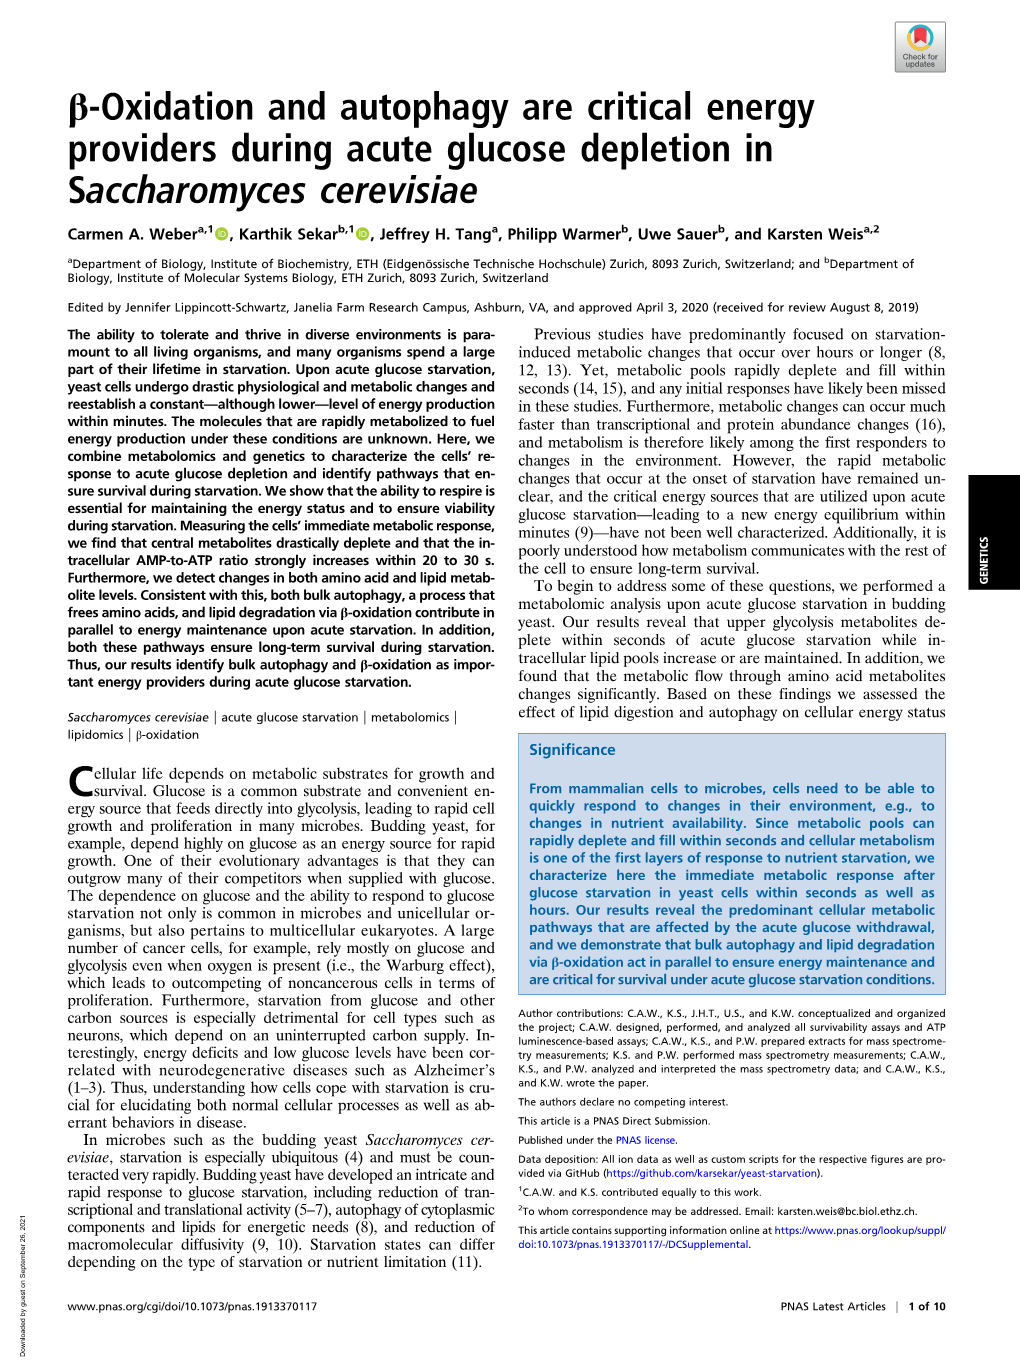 Β-Oxidation and Autophagy Are Critical Energy Providers During Acute Glucose Depletion in Saccharomyces Cerevisiae